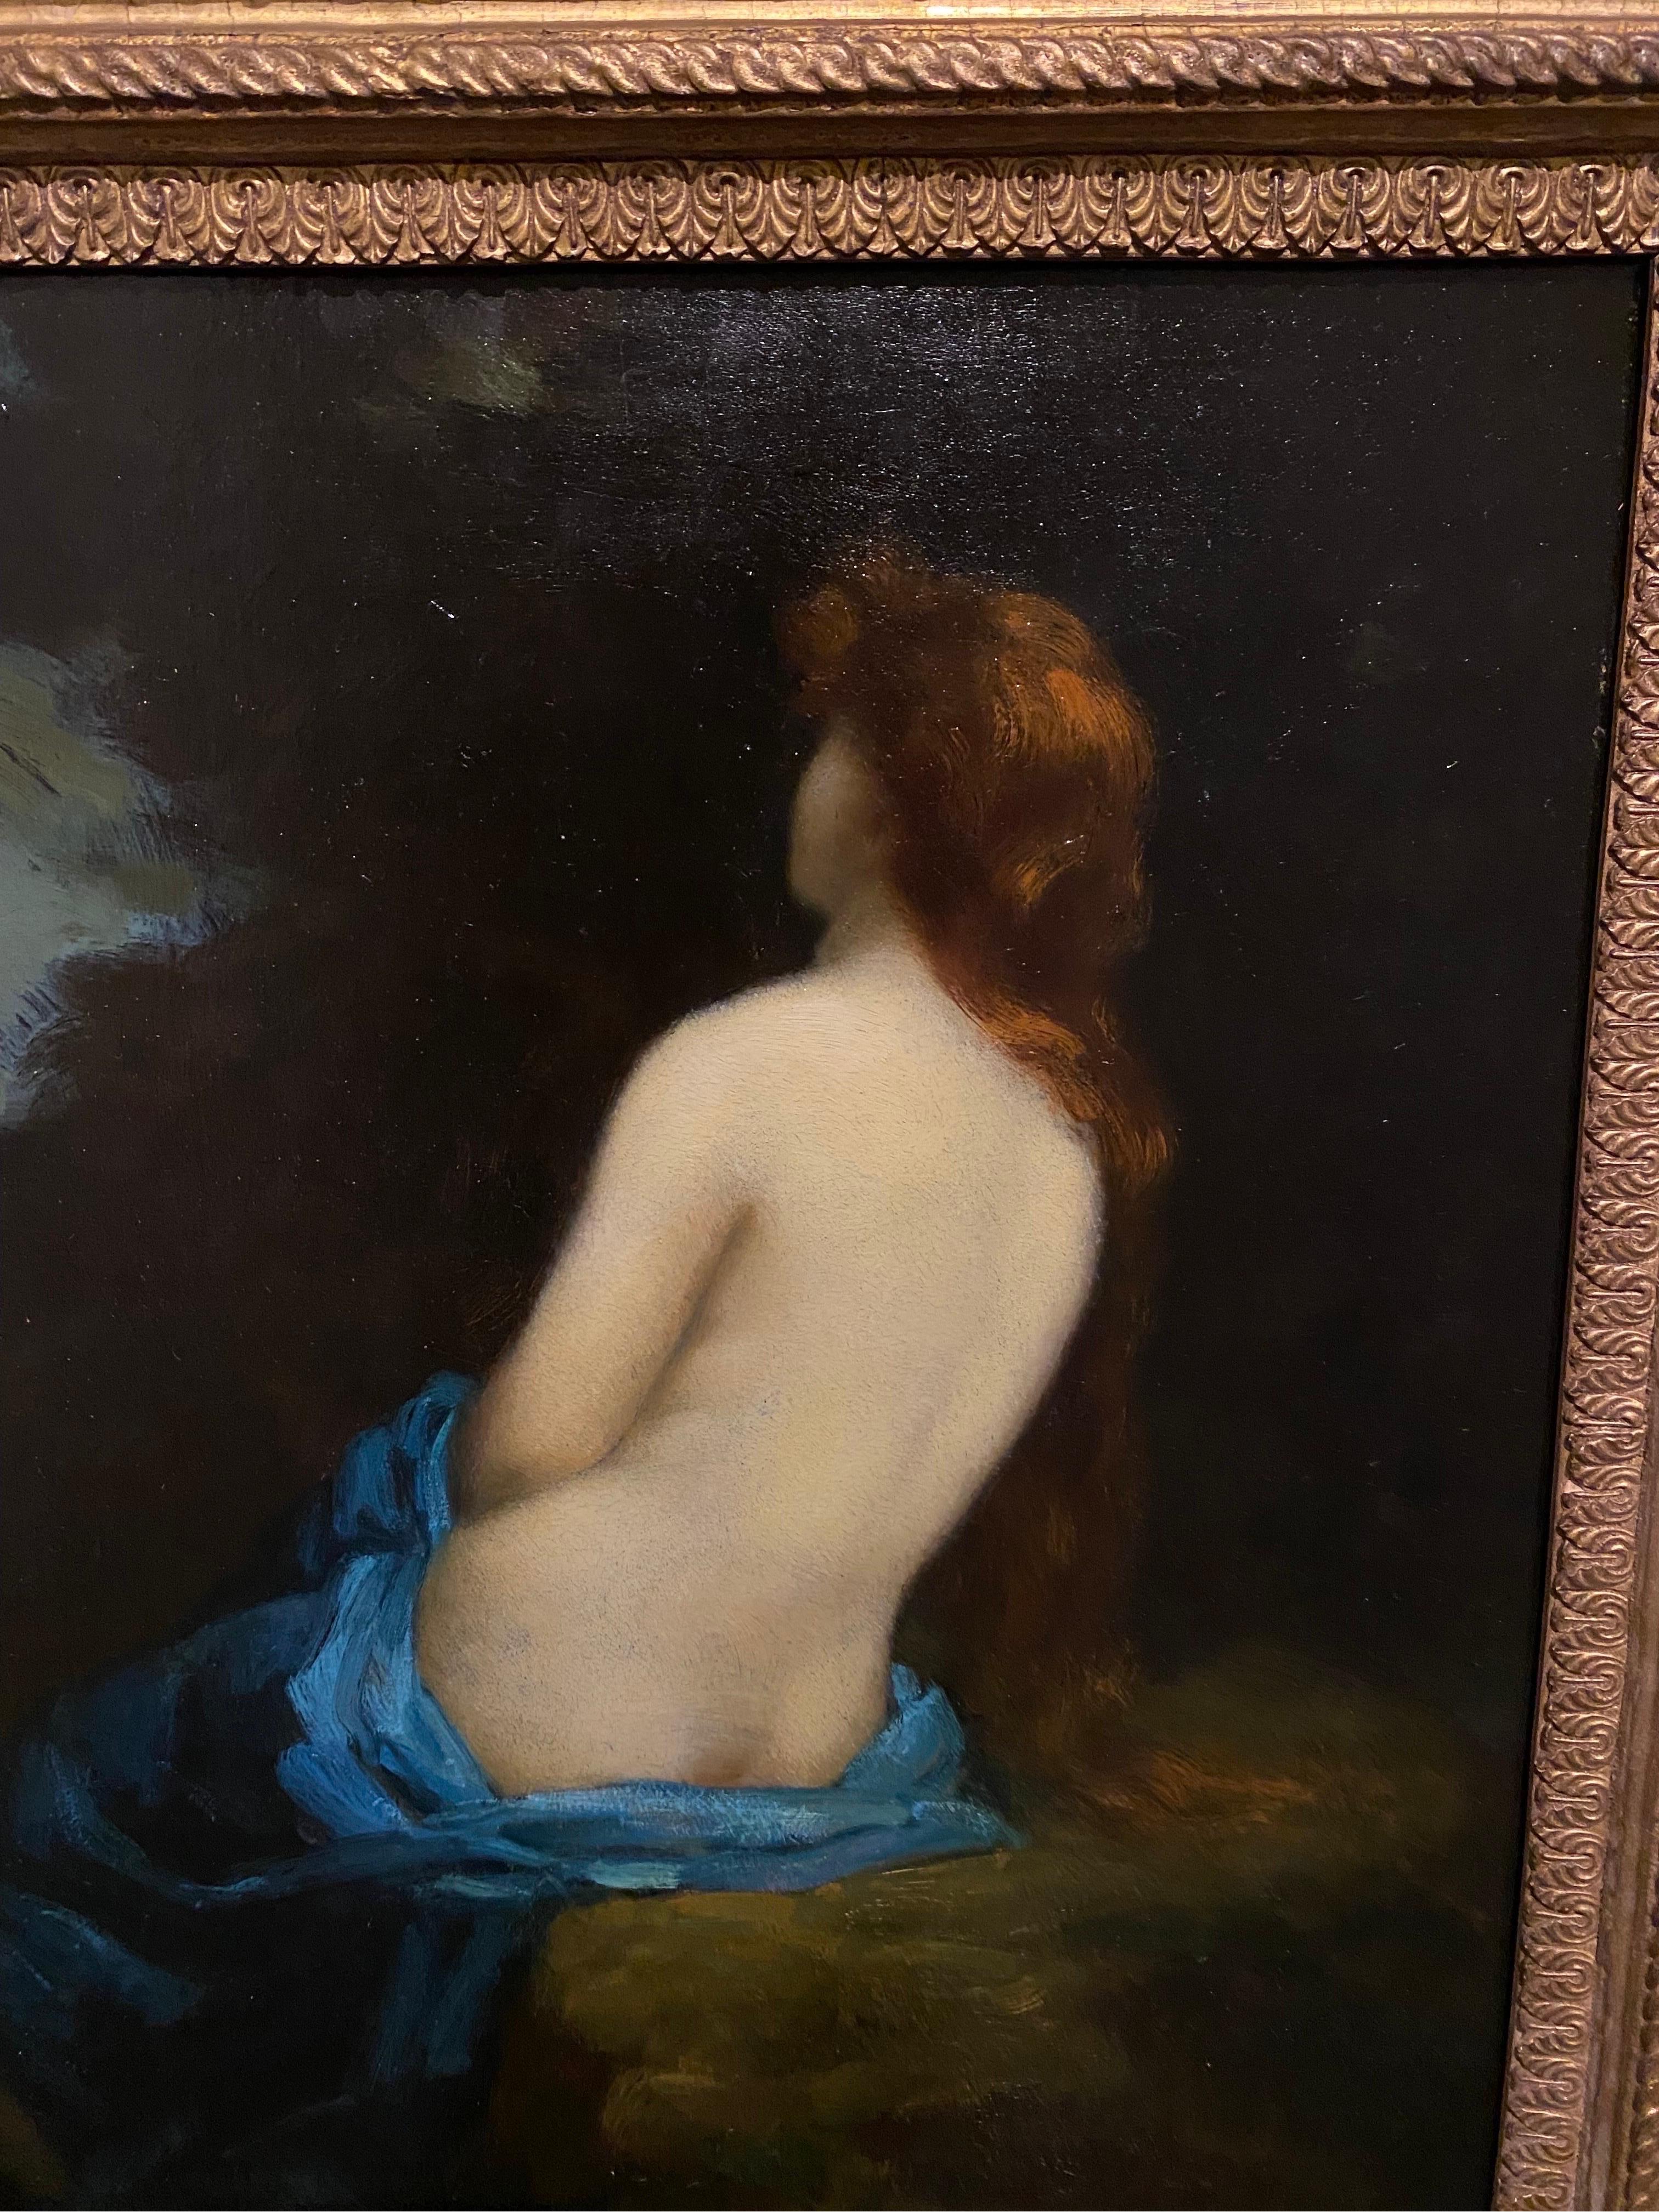 19th century nude paintings